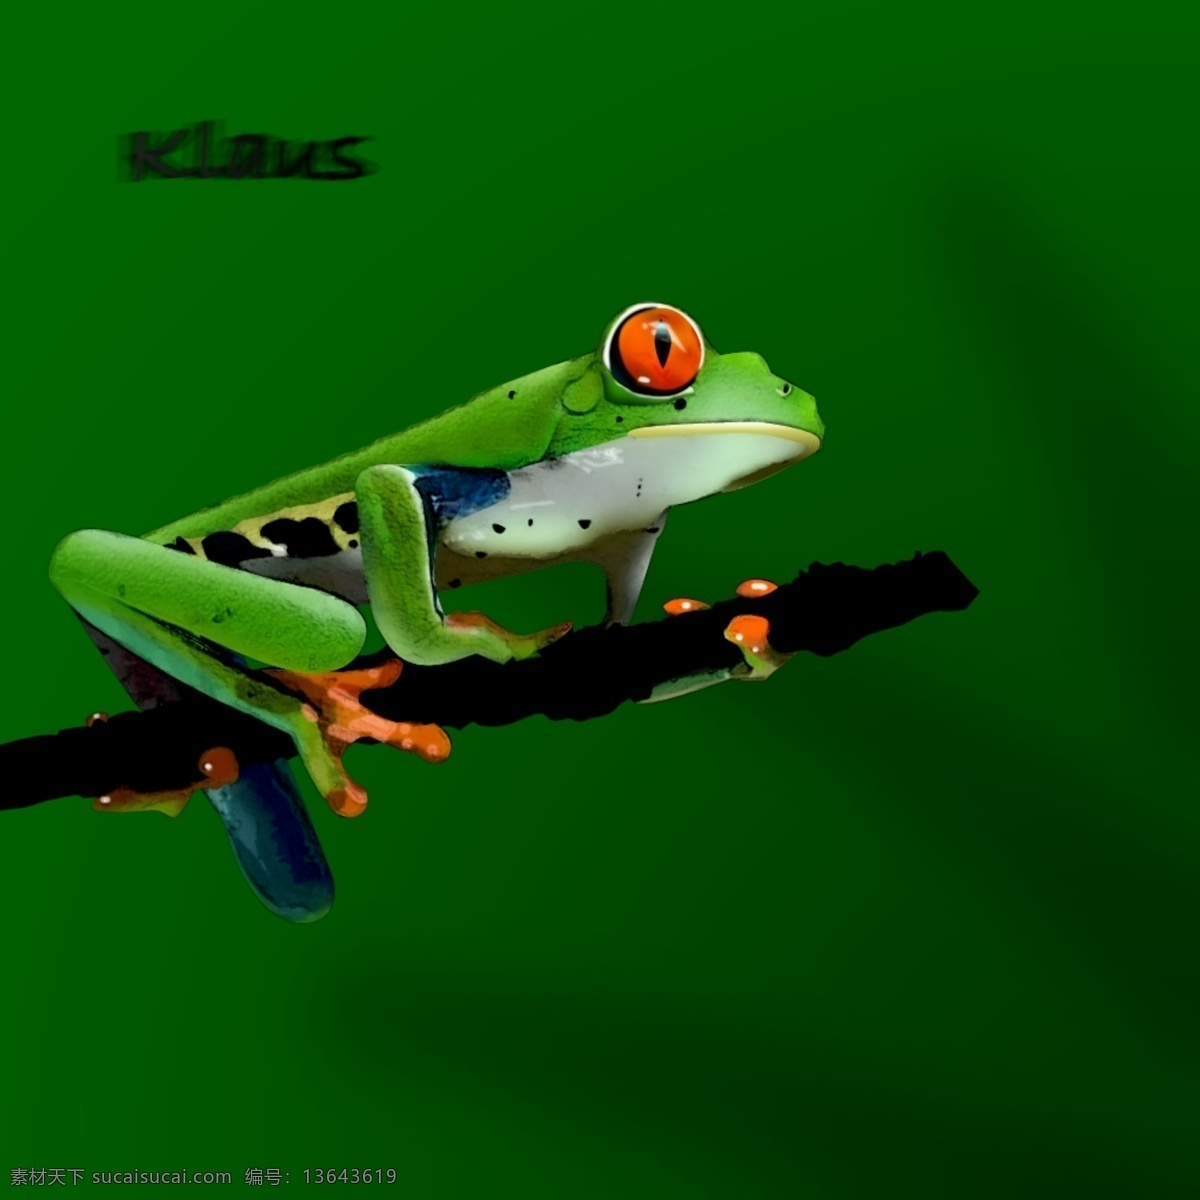 鼠绘树蛙 树蛙 热带雨林 动物 绿色动物 青蛙 psd源文件 分层 源文件